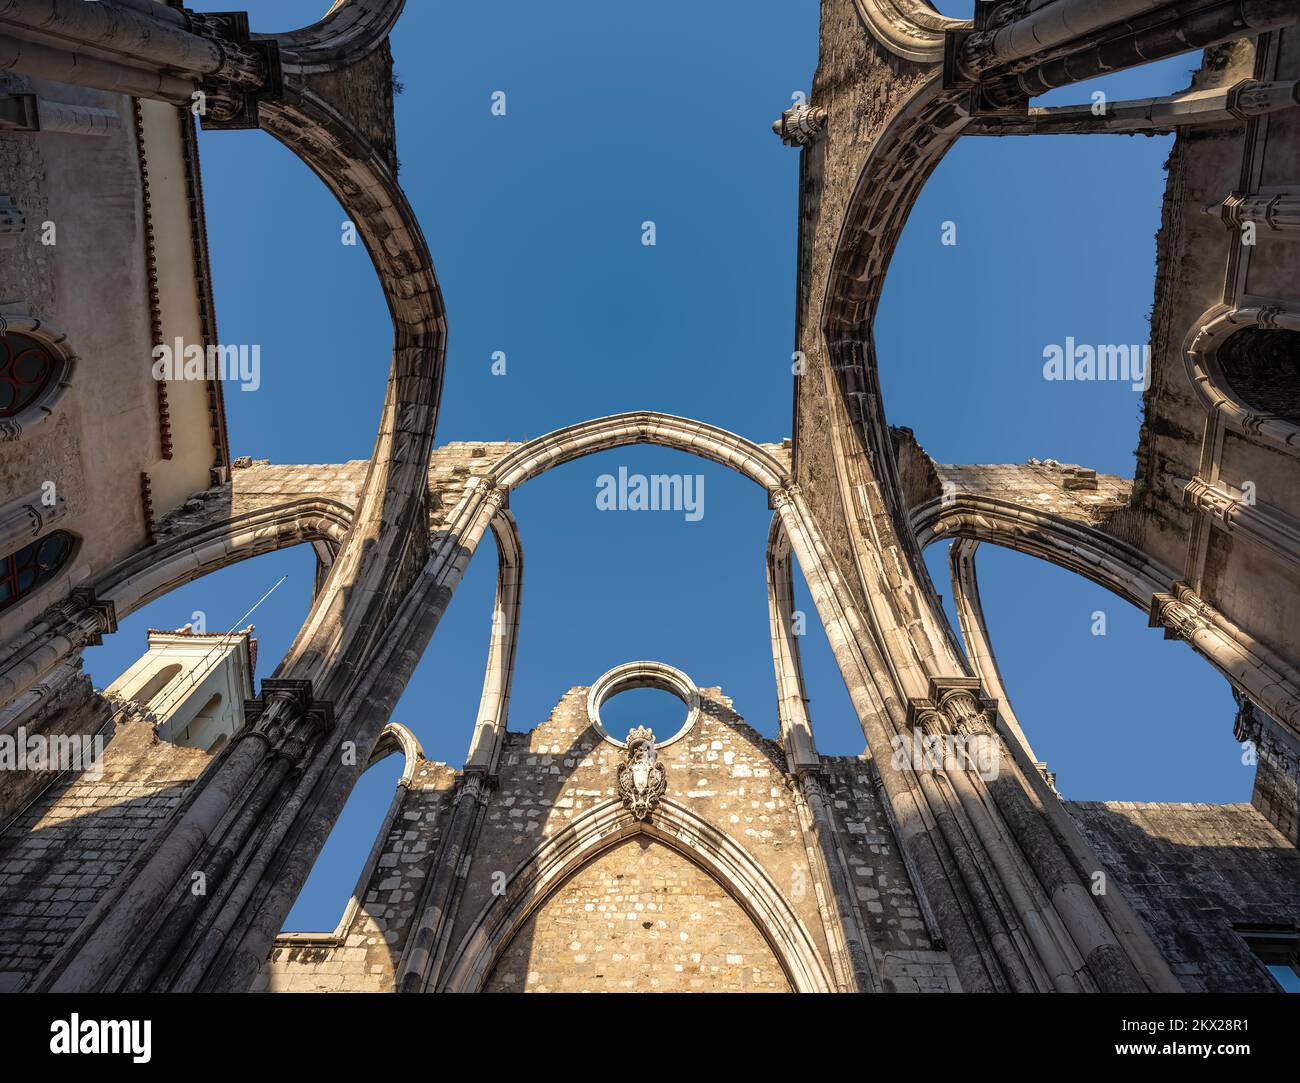 Arches ruinées de la nef principale de l'église Carmo au couvent Carmo (Convento do Carmo) - Lisbonne, Portugal Banque D'Images